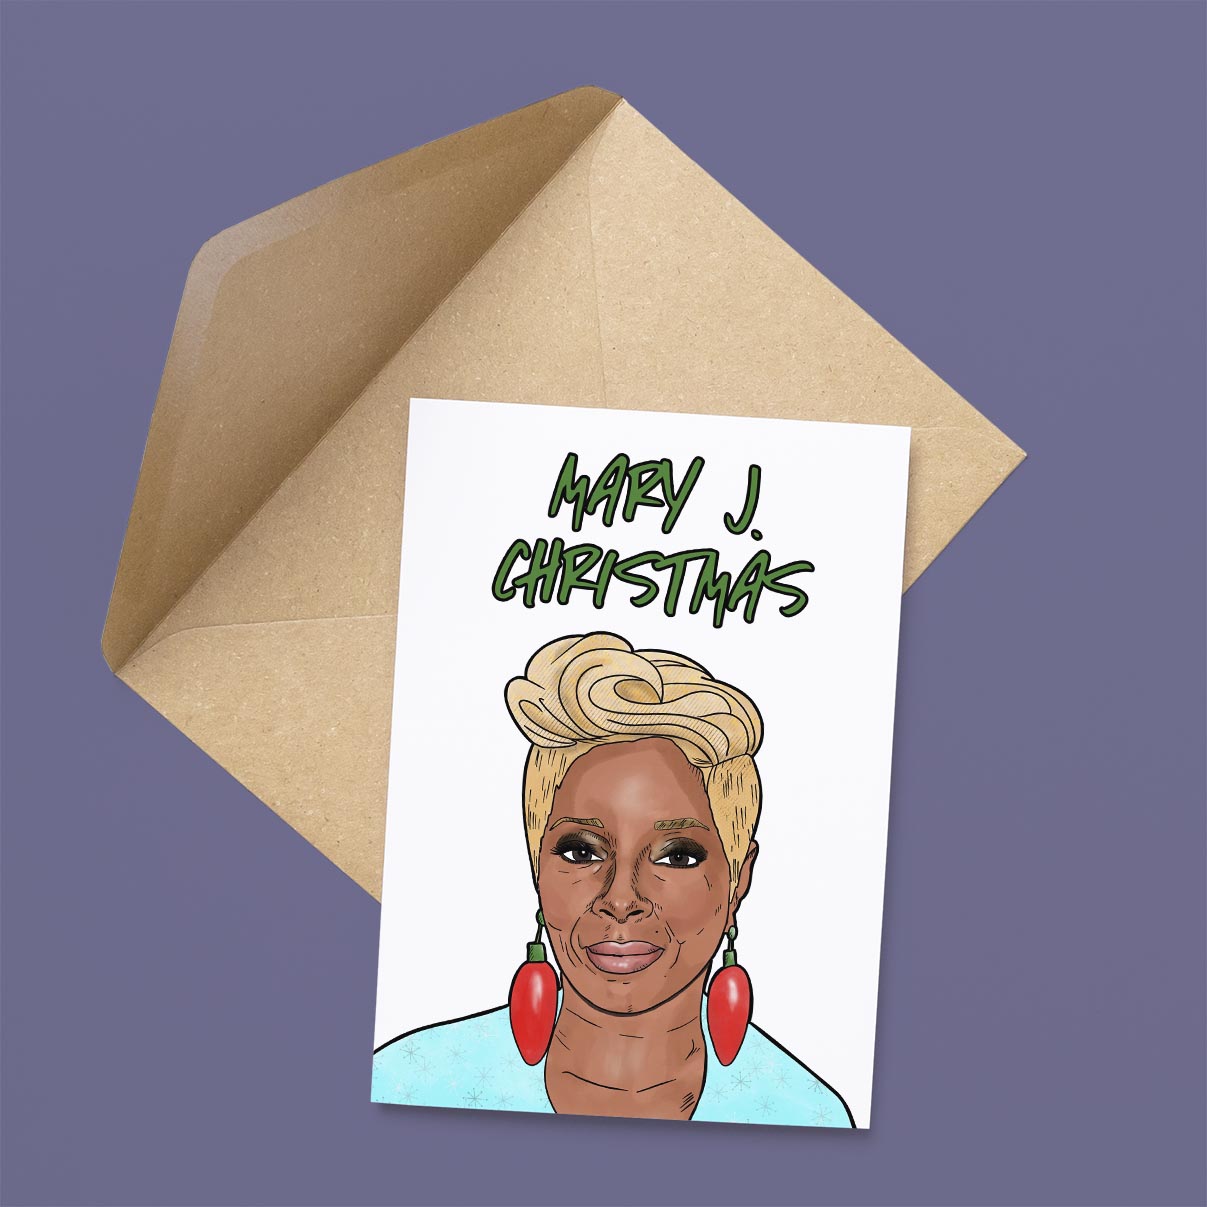 Mary J. Christmas Card